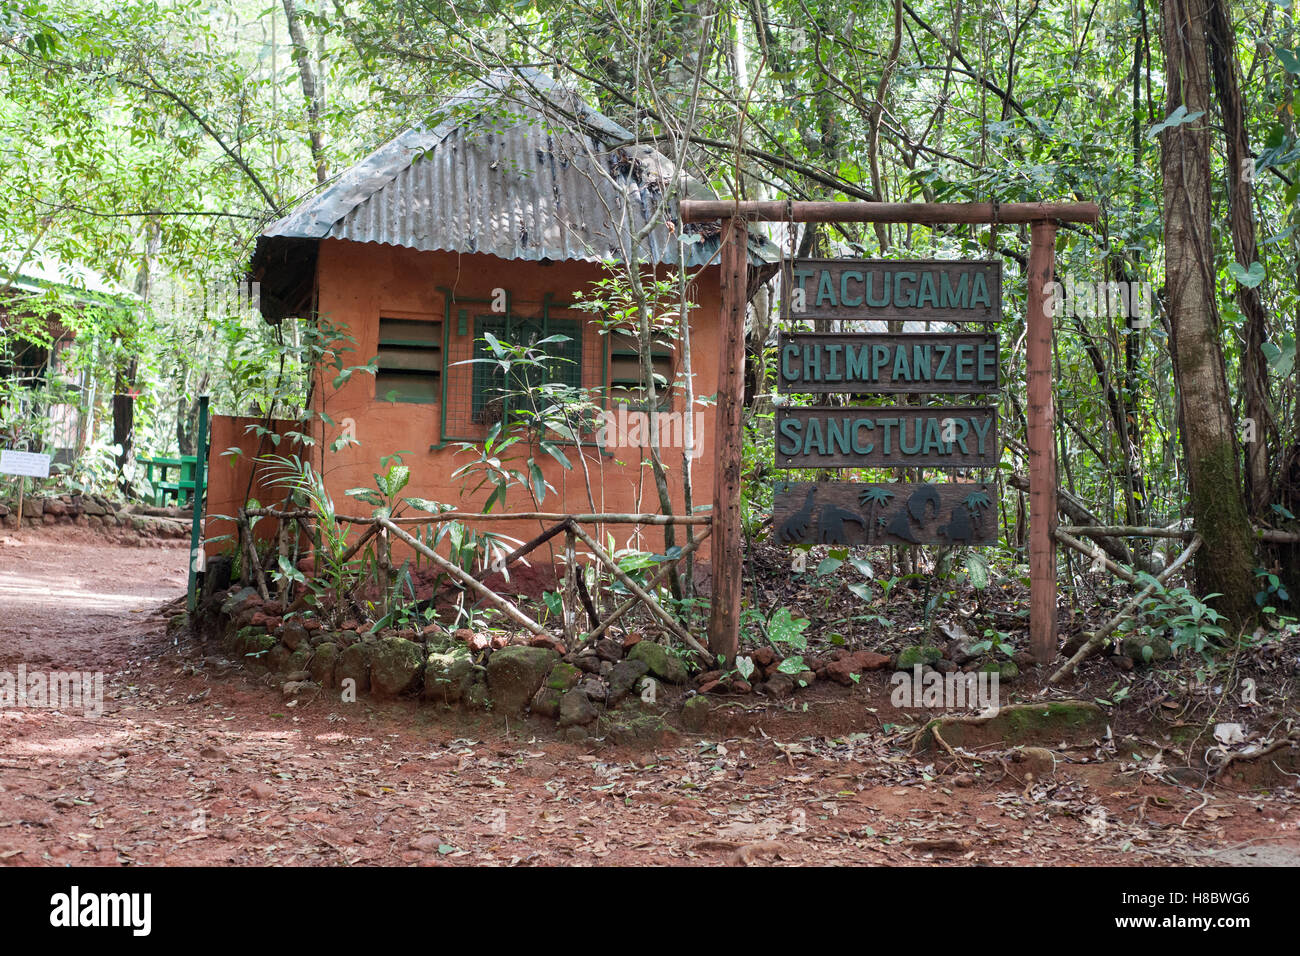 Entrée de Tacugama chimpanzee sanctuary, Sierra Leone Banque D'Images